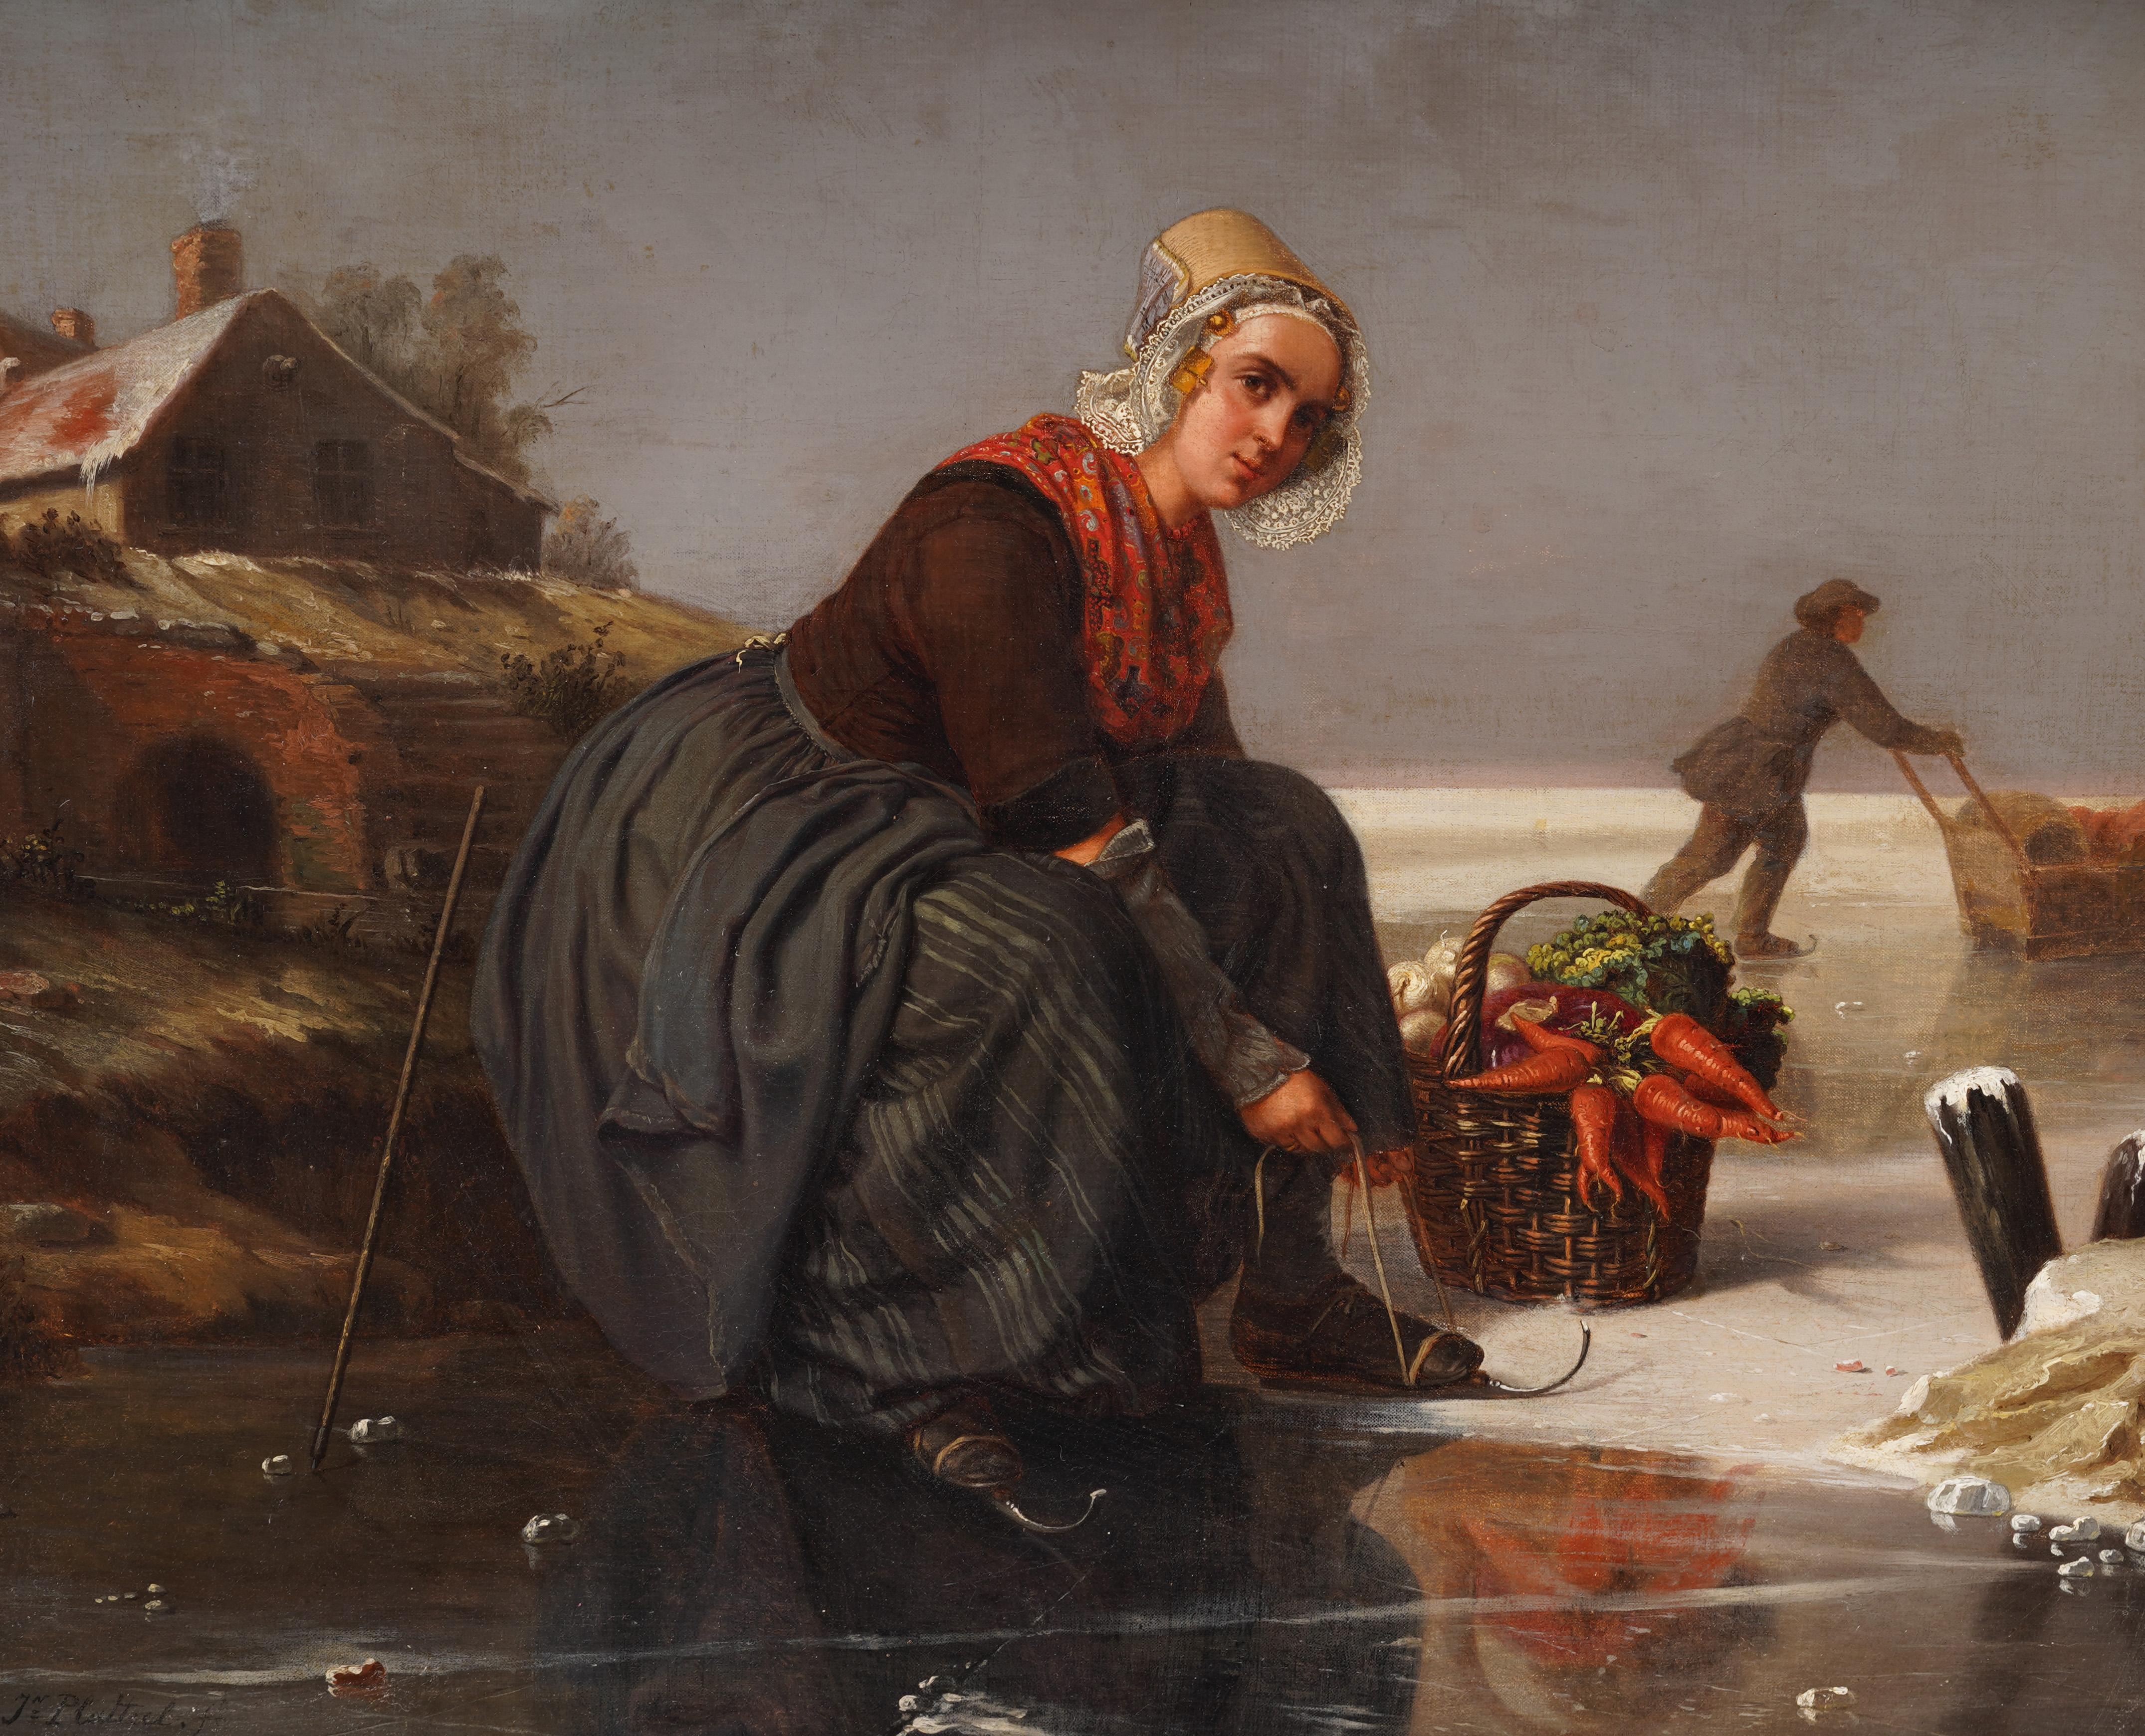 Un puissant paysage et portrait du 19e siècle.  Une jeune femme néerlandaise laçant ses patins.  Très rare et bien peint.  Huile sur toile, marouflée sur carton.  Il est présenté dans un magnifique cadre d'époque en bois doré.  Signé.